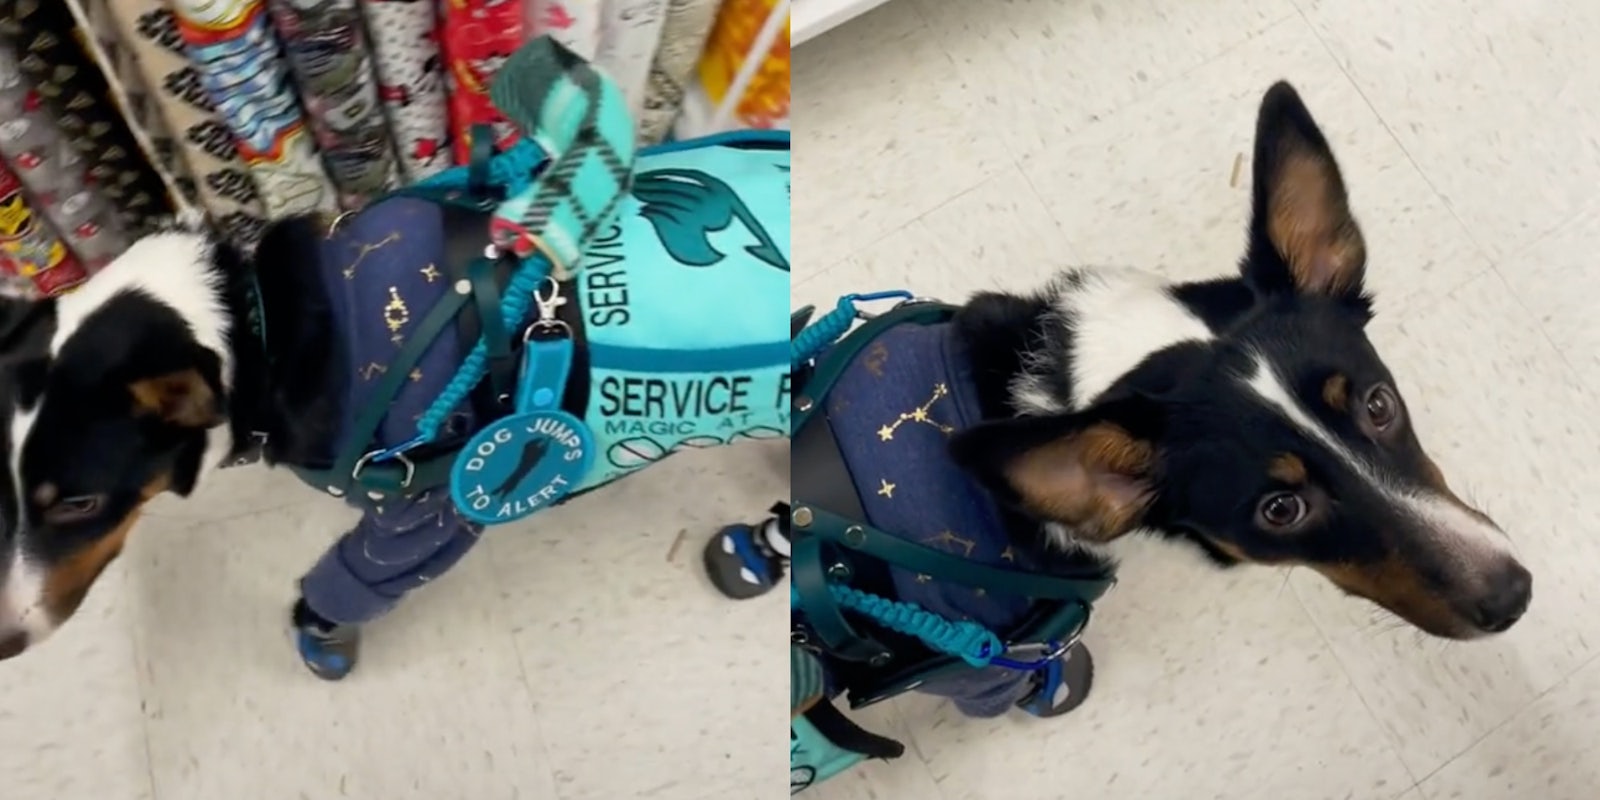 Service dog in blue vest